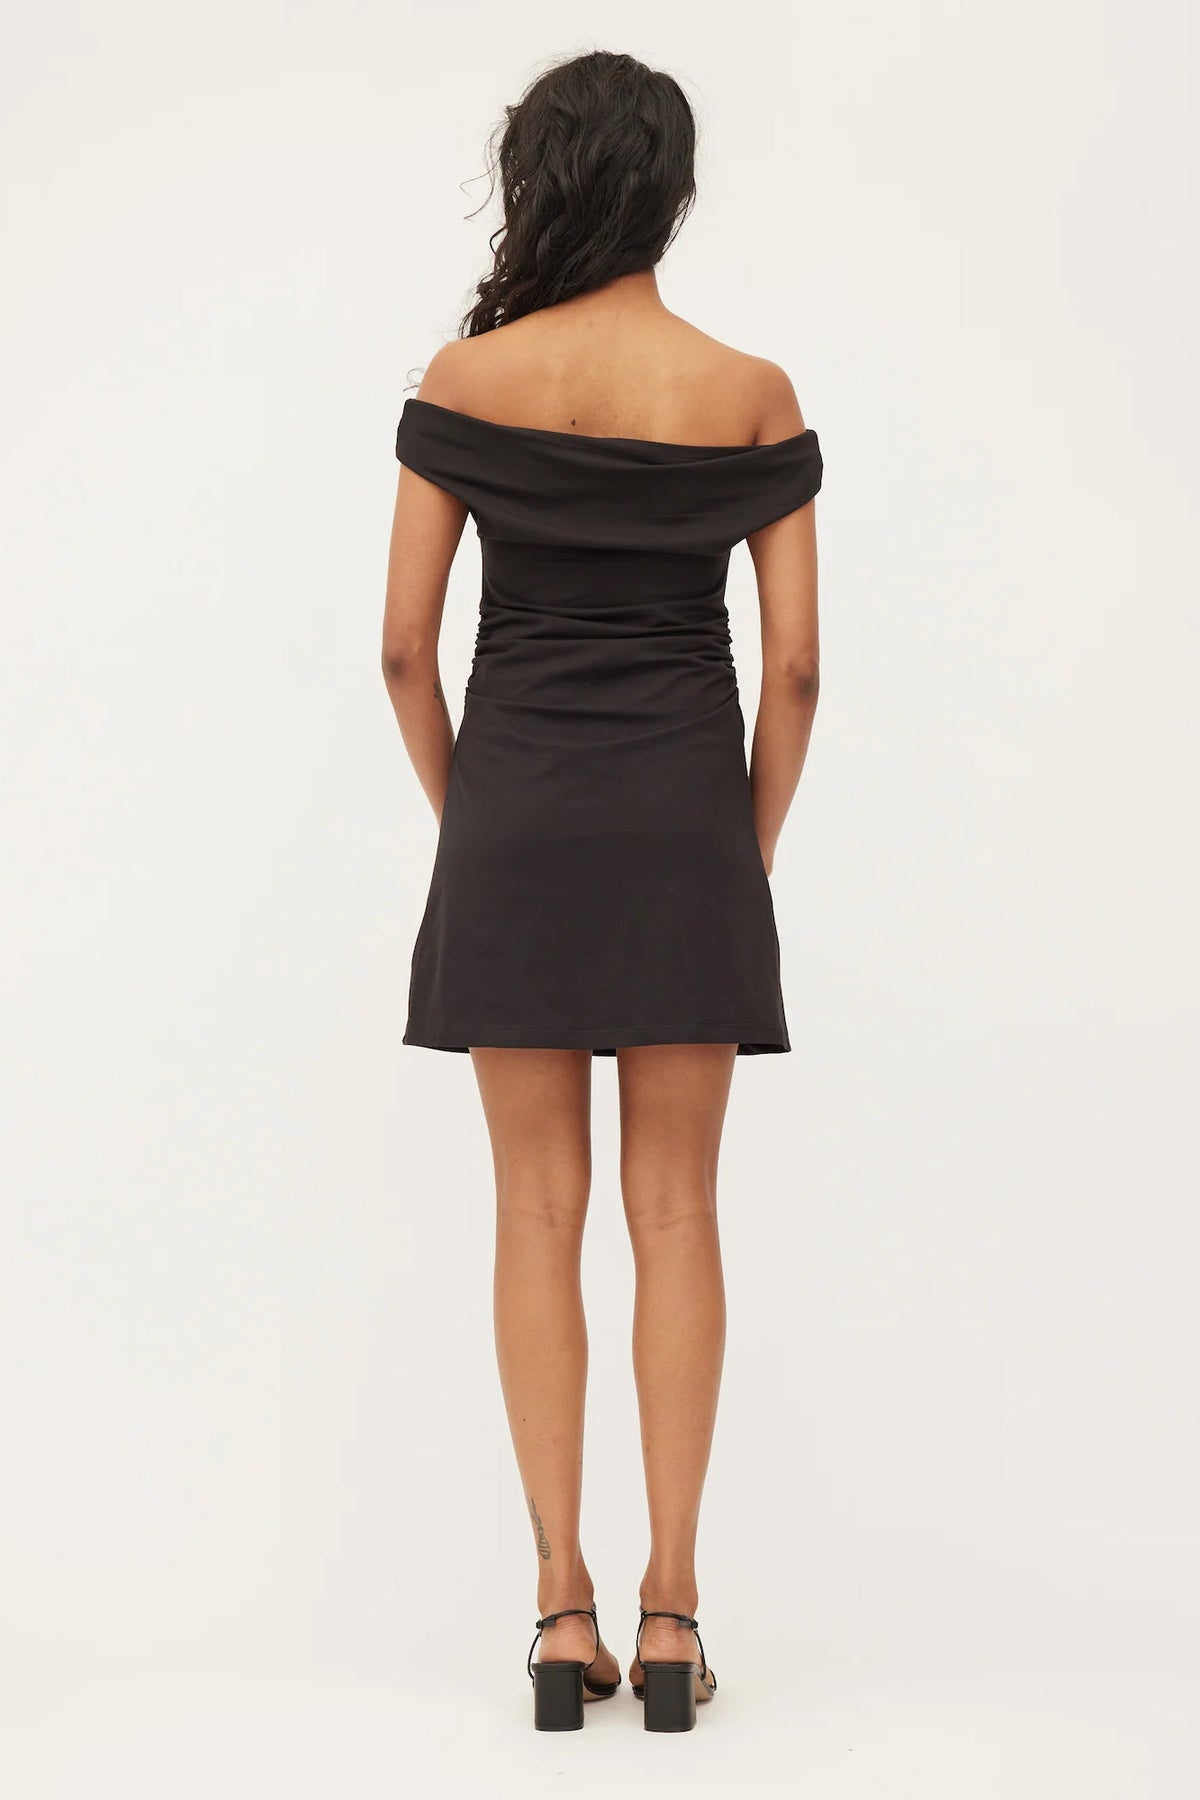 Dominique Healy Vera Mini Dress // Black